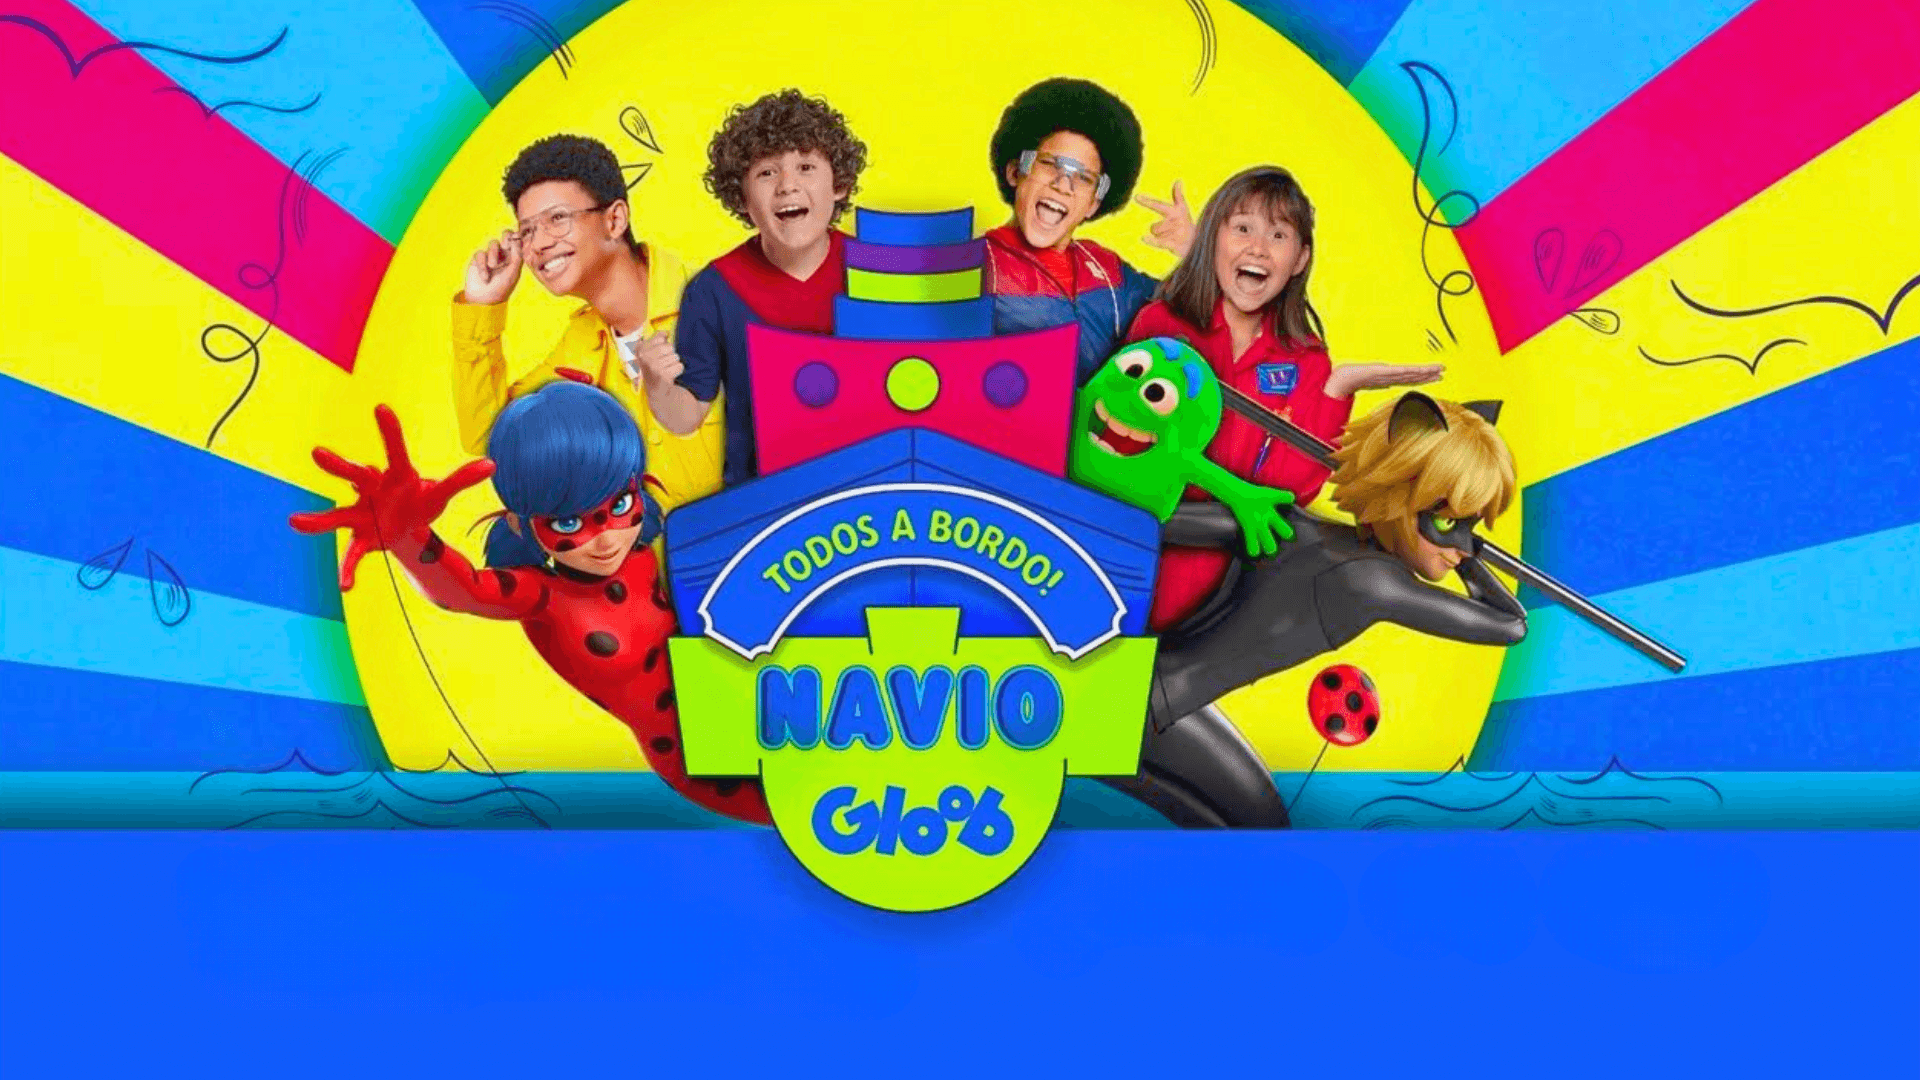 Globo apresenta plano comercial para segunda edição do Navio Gloob